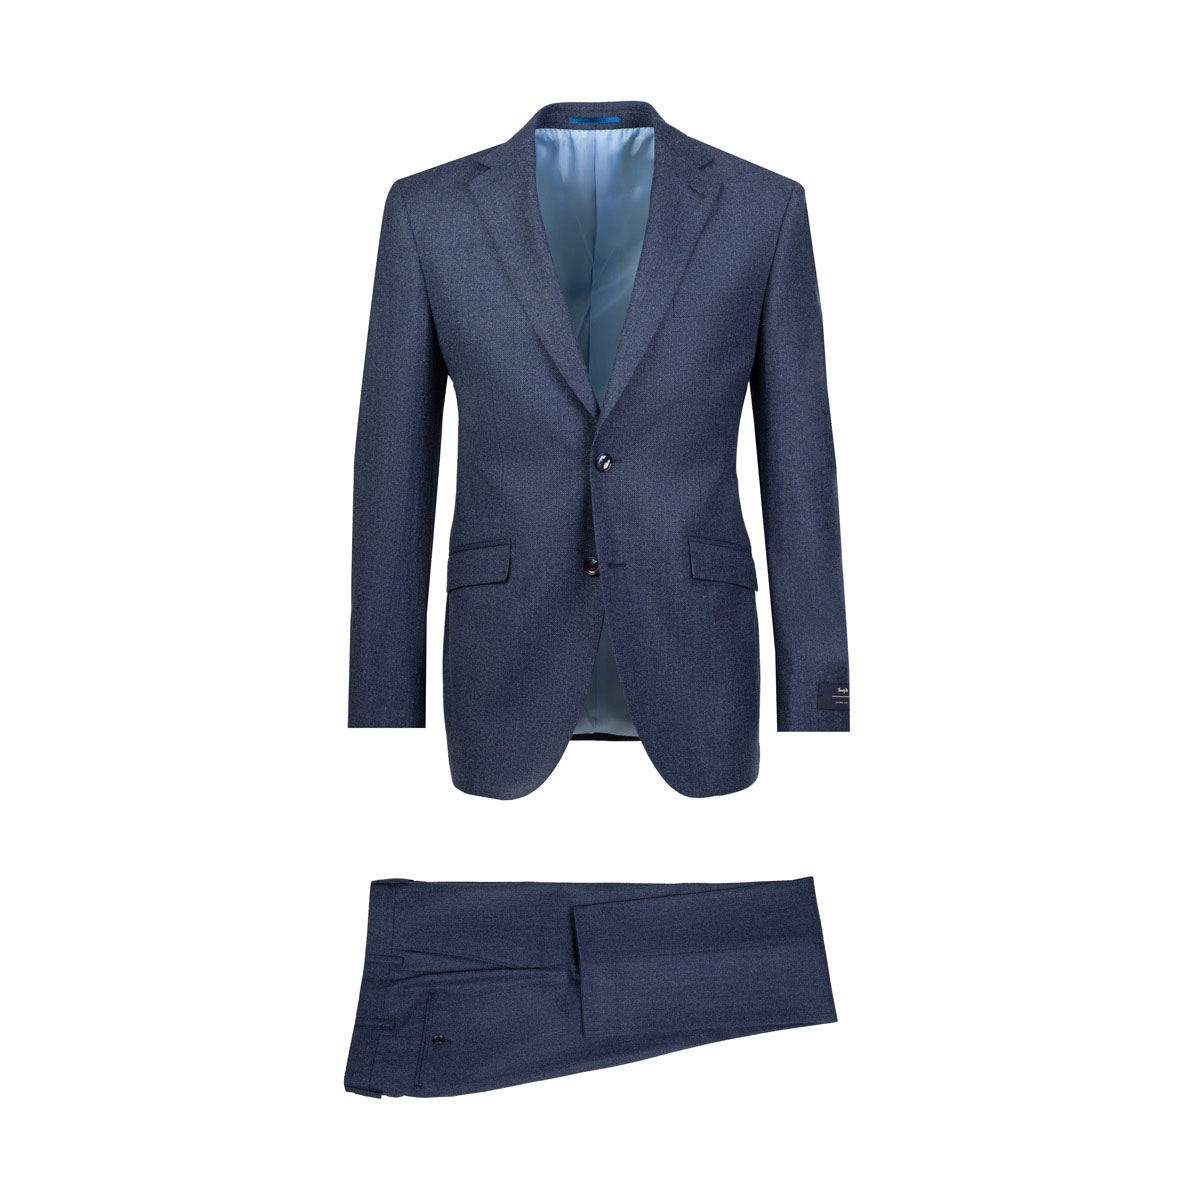 Anzug in blau mit feiner Birdseye-Struktur